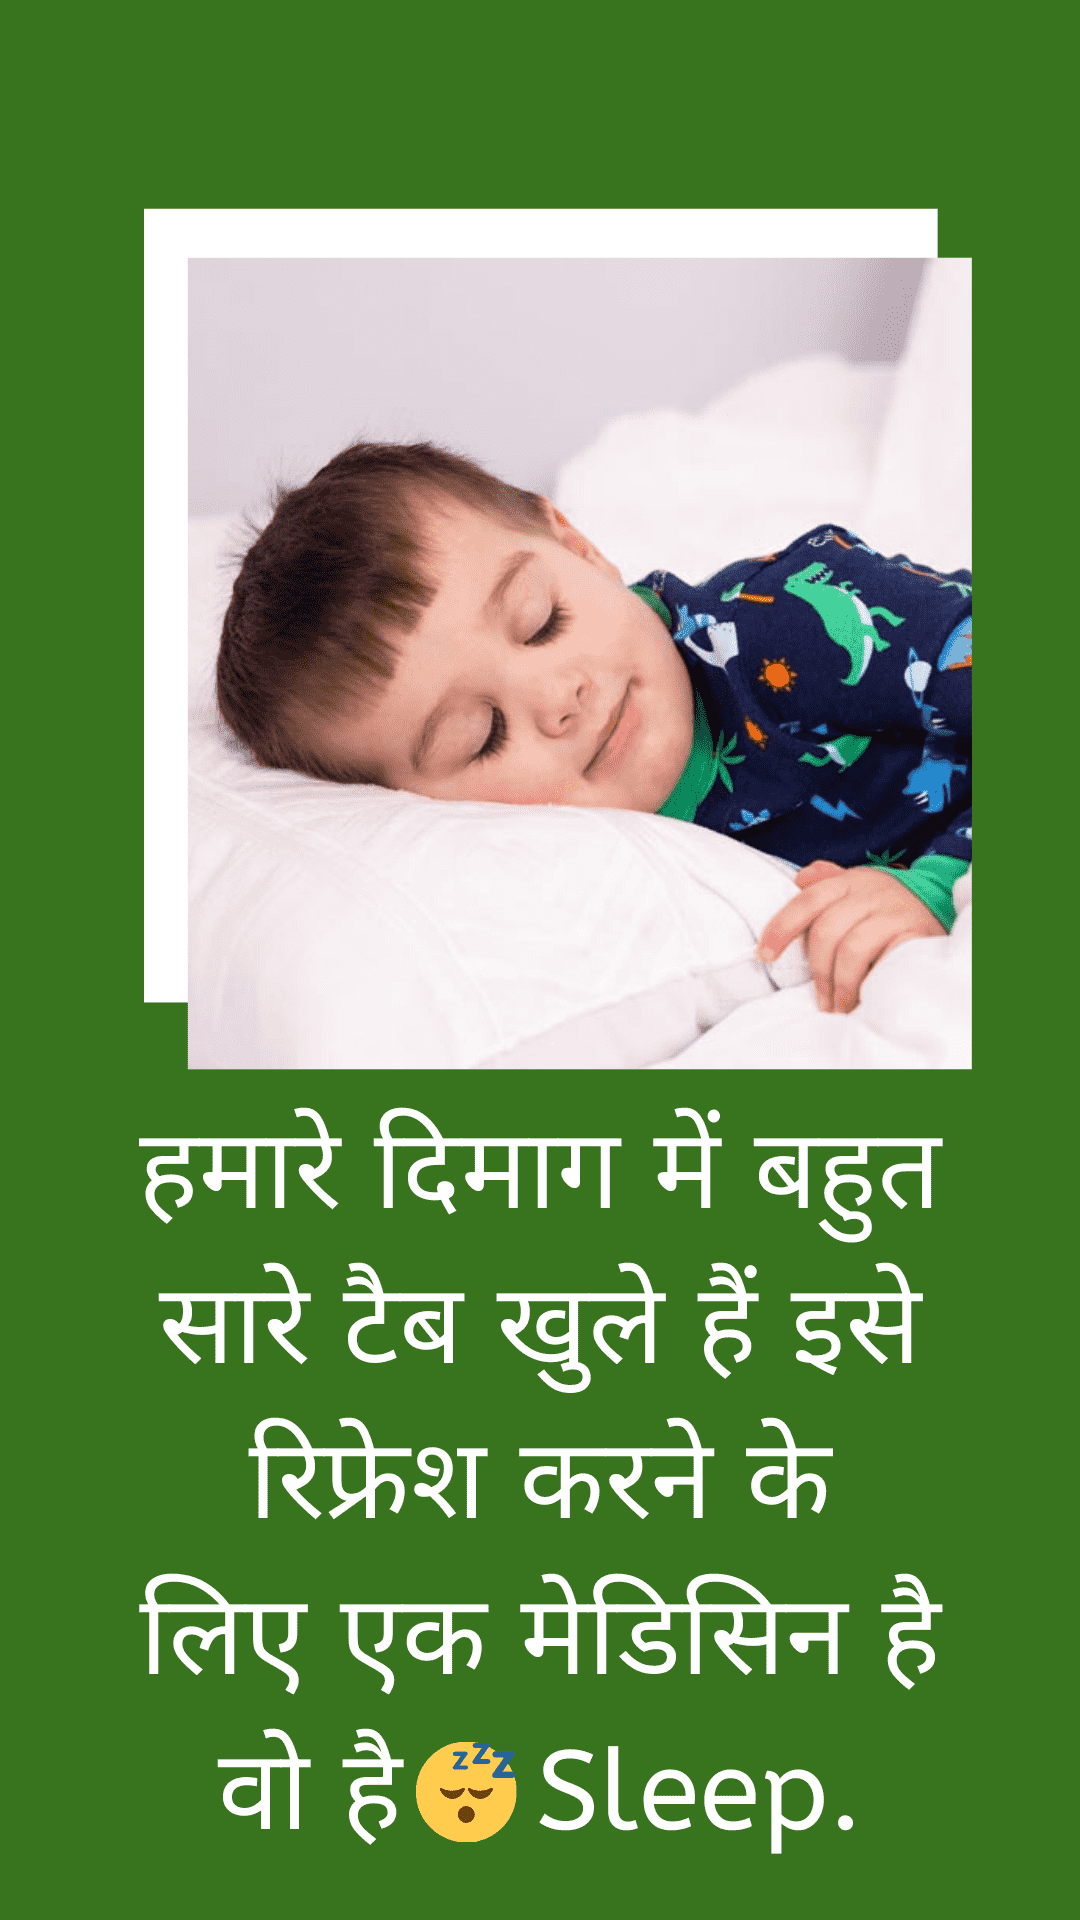 Sleep whatsapp status in hindi